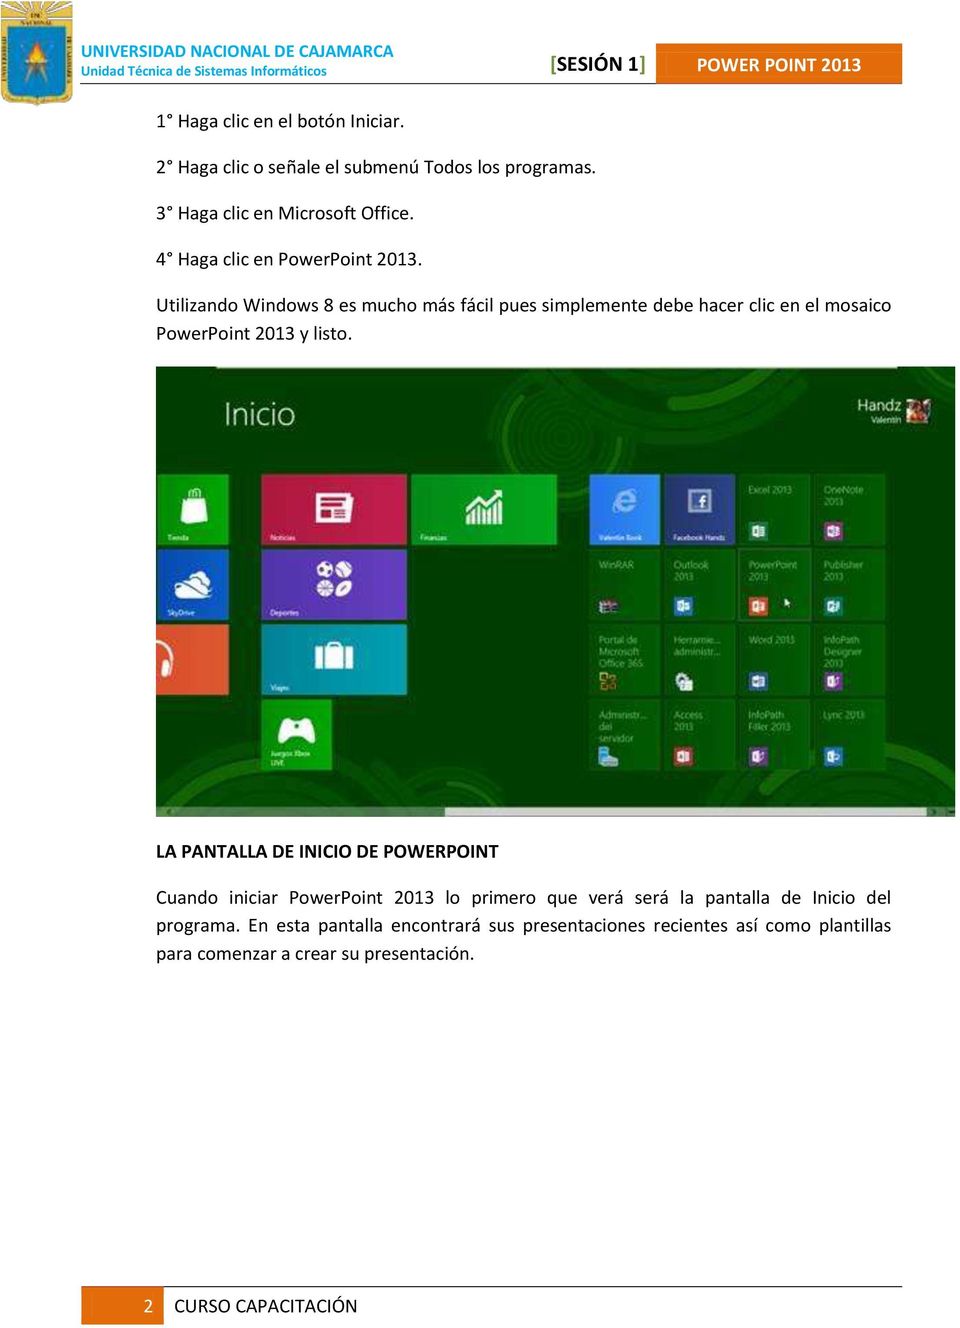 Utilizando Windows 8 es mucho más fácil pues simplemente debe hacer clic en el mosaico PowerPoint 2013 y listo.